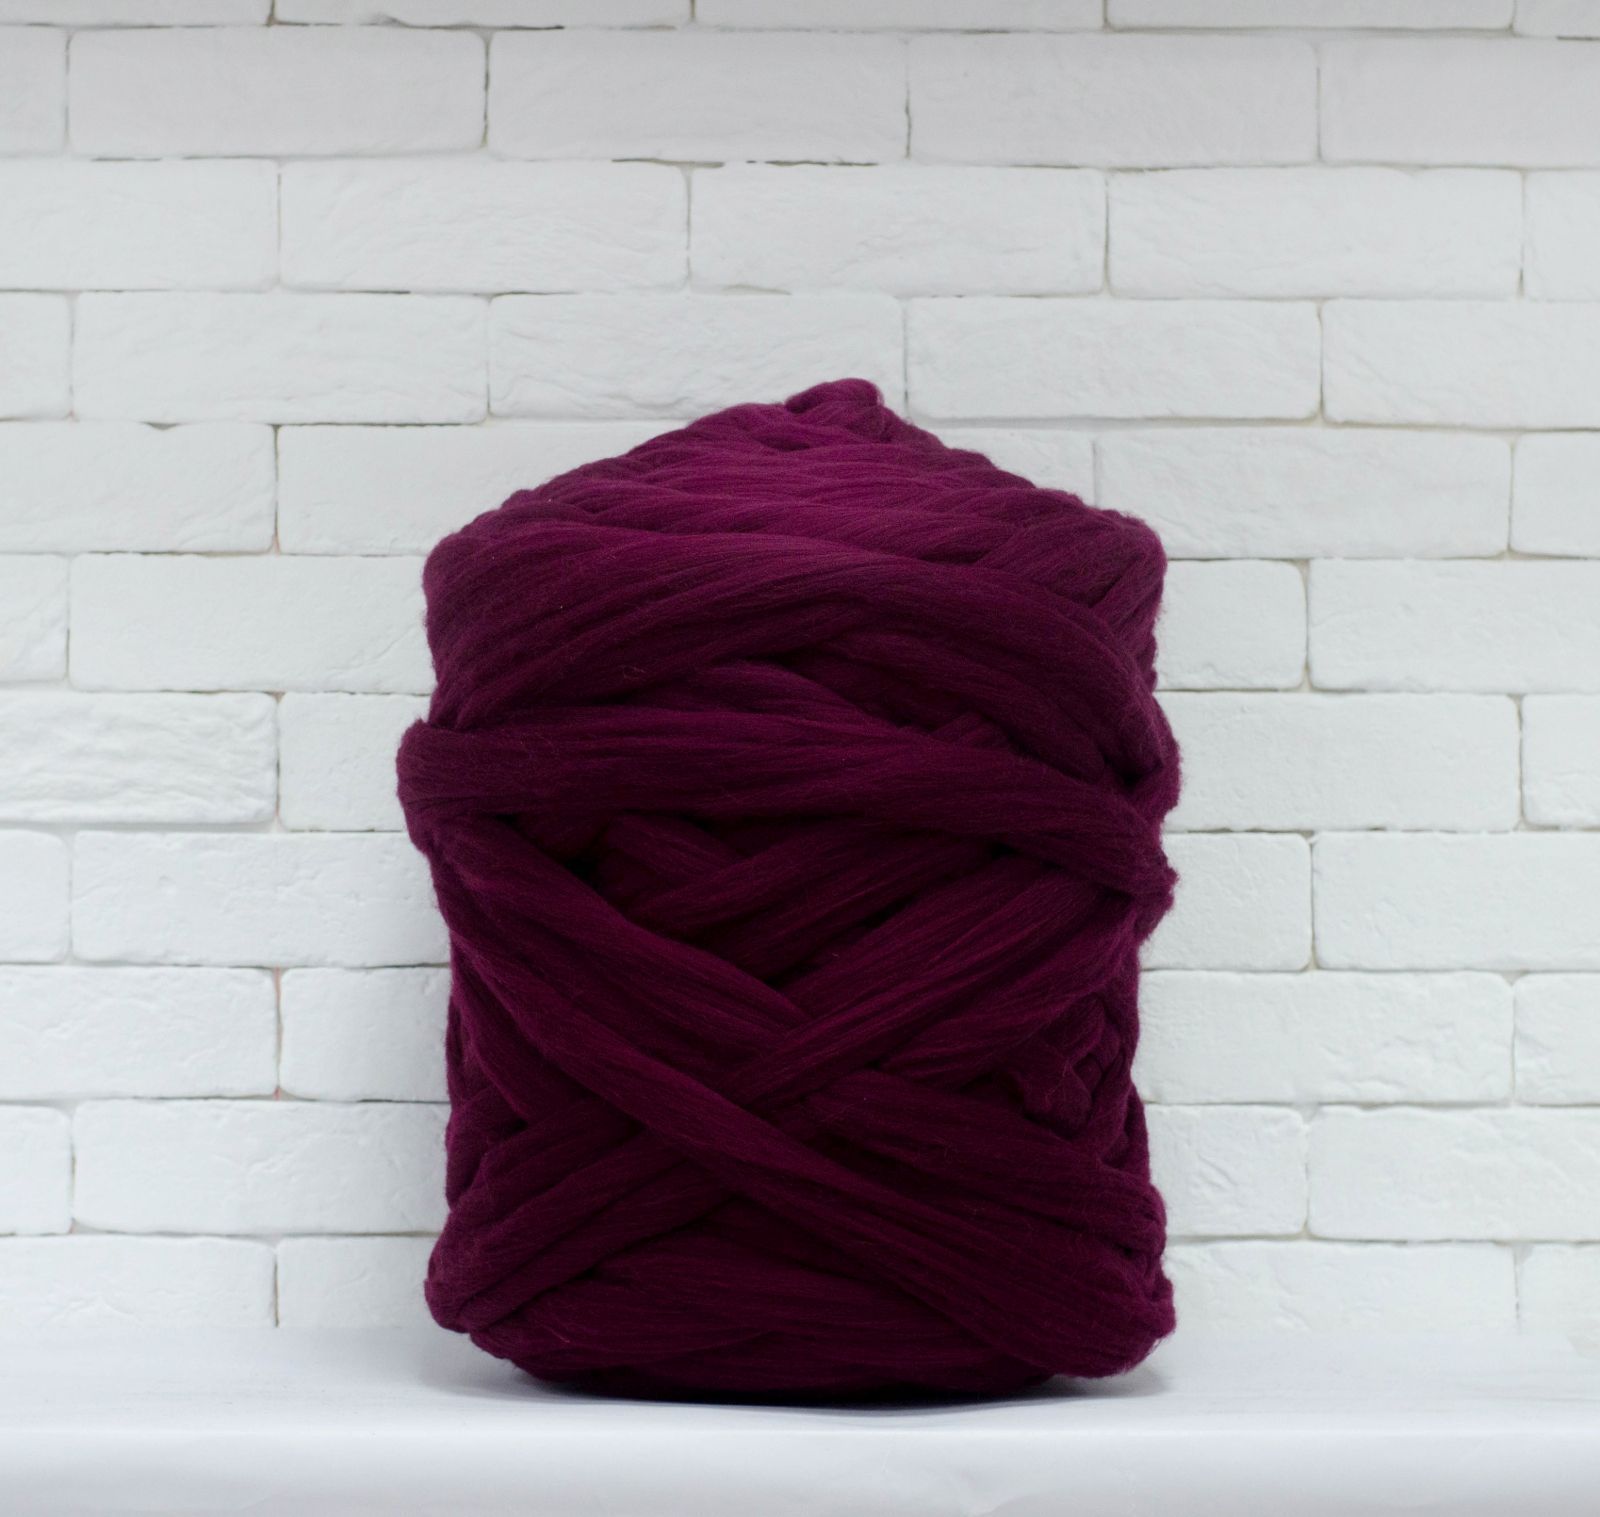 Best Deal for Giant Yarn Chunky Knit Yarn Wool Yarn Extreme Arm Knitting